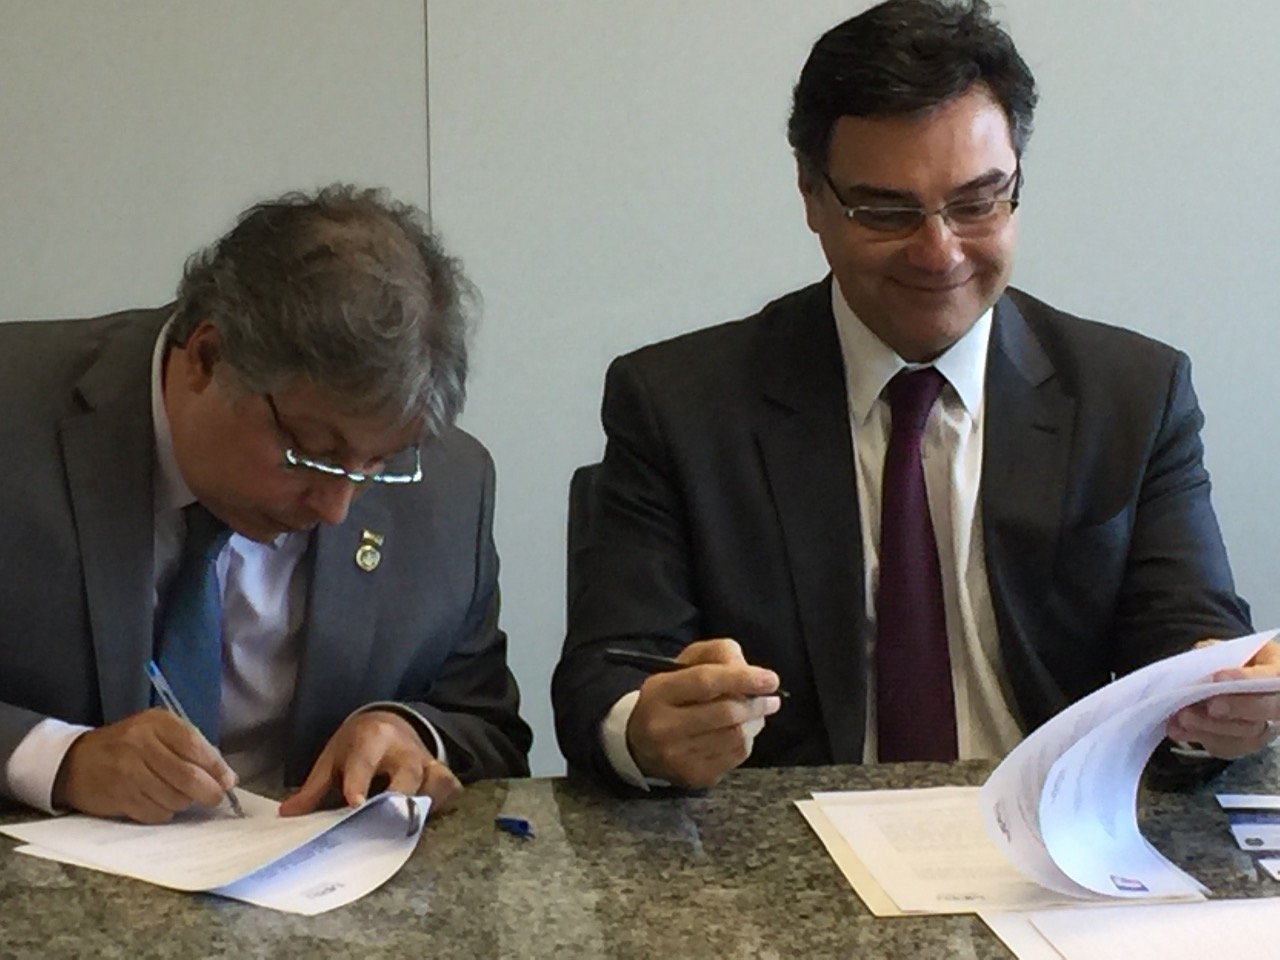 Descrição da foto: dois homens, vestidos de terno e gravata, assinam um documento.